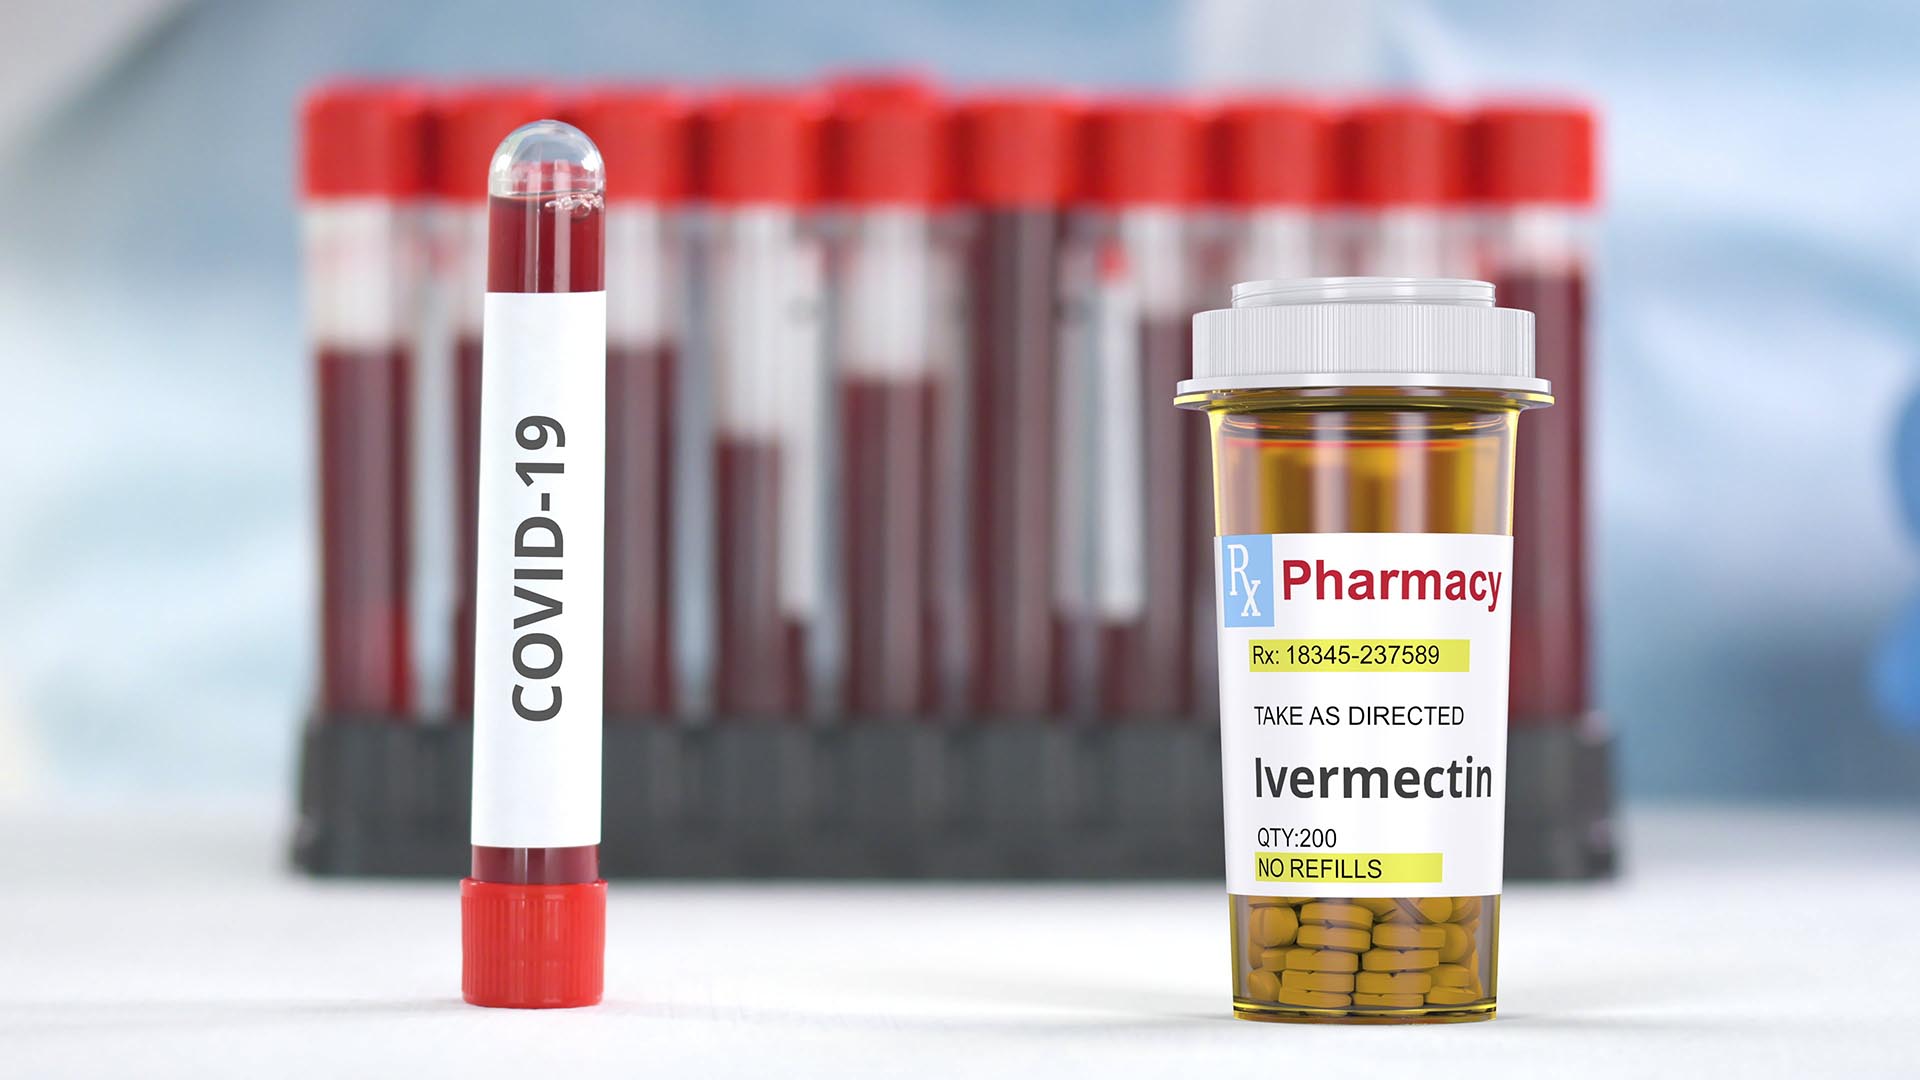 La ivermectina es un agente parasitario muy conocido (Shutterstock)